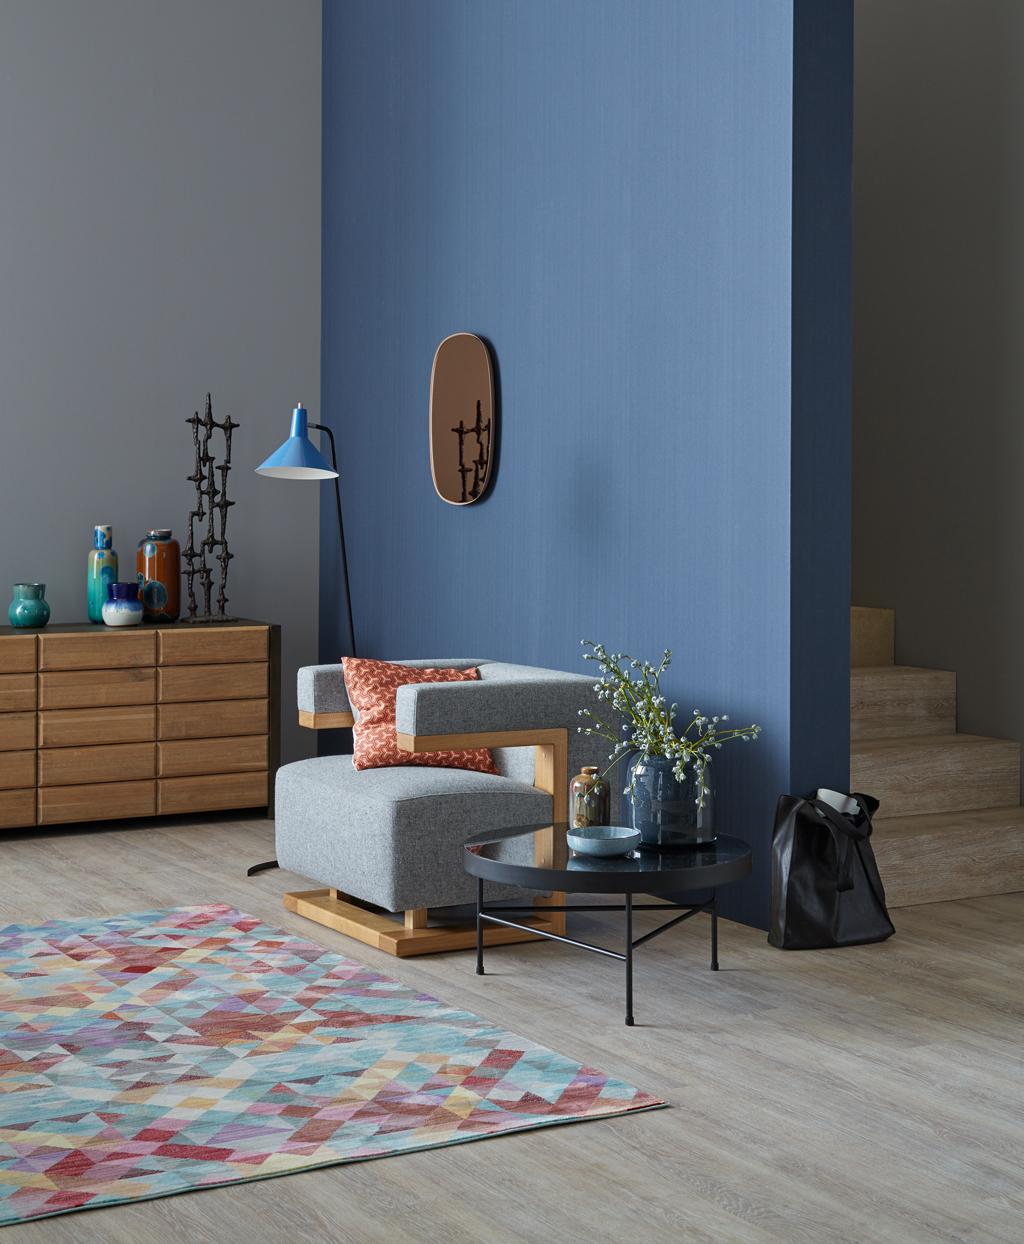 Sehnsucht nach Sinnlichkeit im Wohnzimmer #wandfarbe #teppich #kissen #kork #vliestapete ©Schöner Wohnen-Kollektion/Janne Petersen